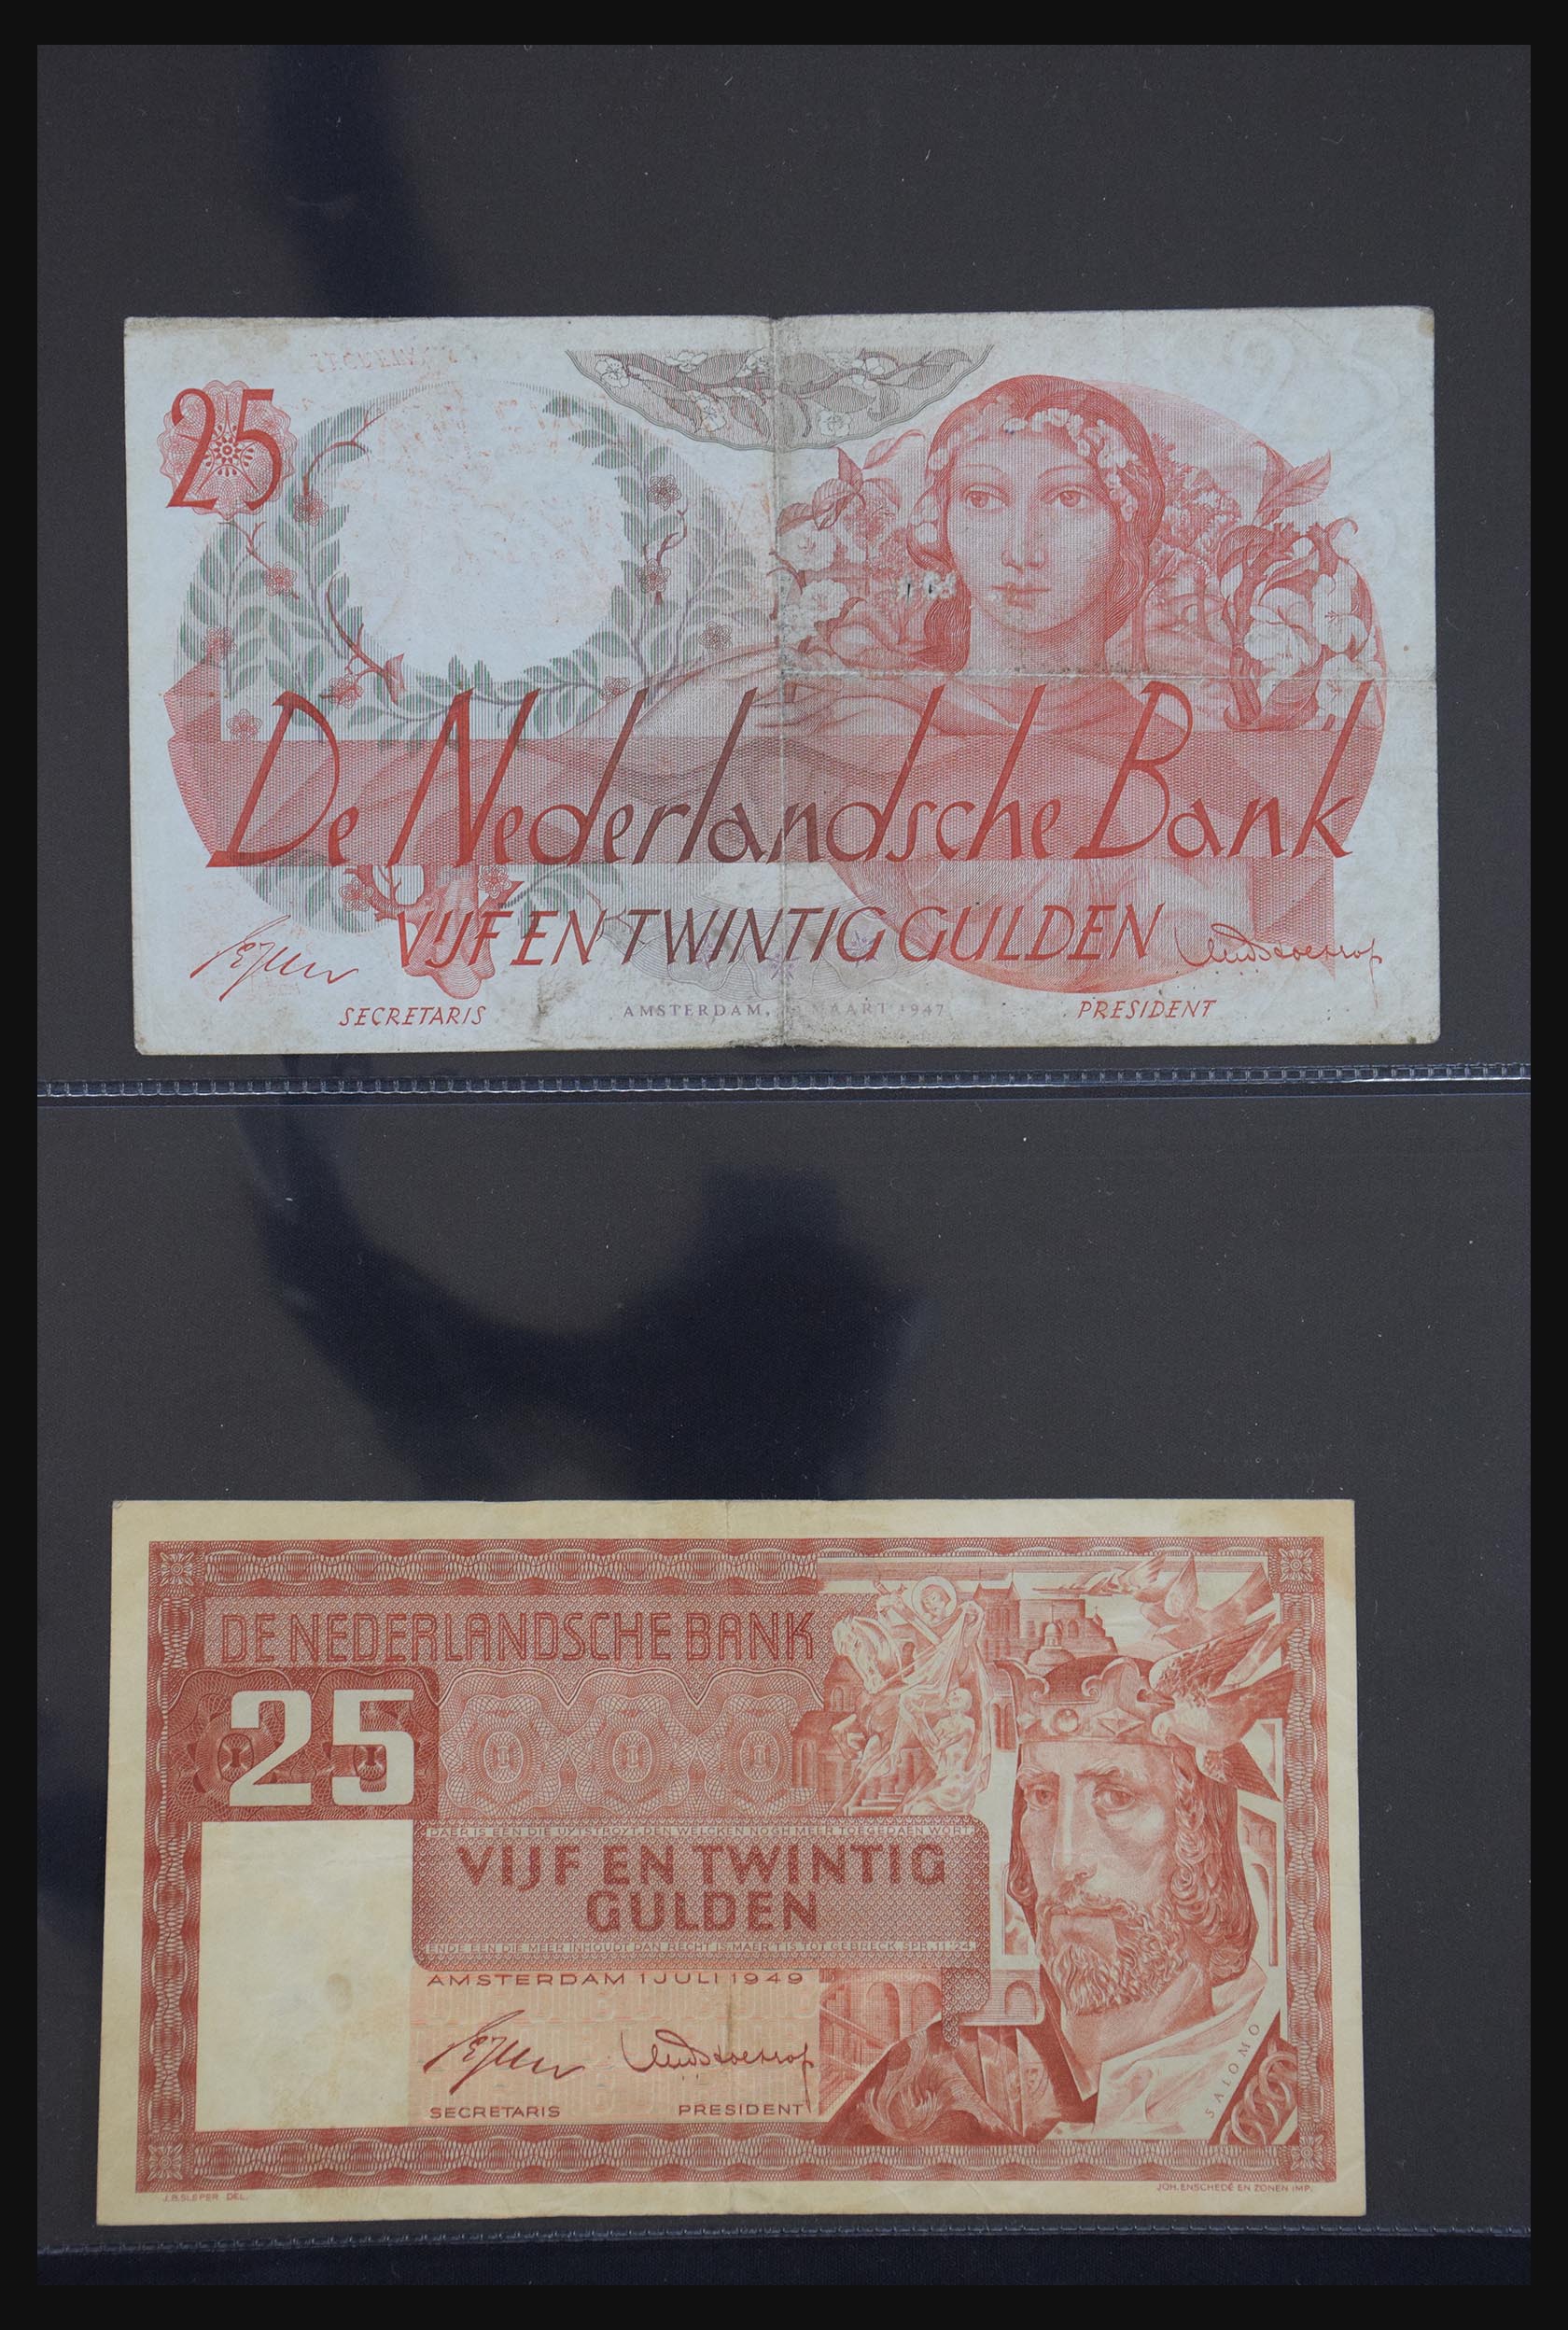 29404 031 - 29404 Nederland bankbiljetten 1924-1997.